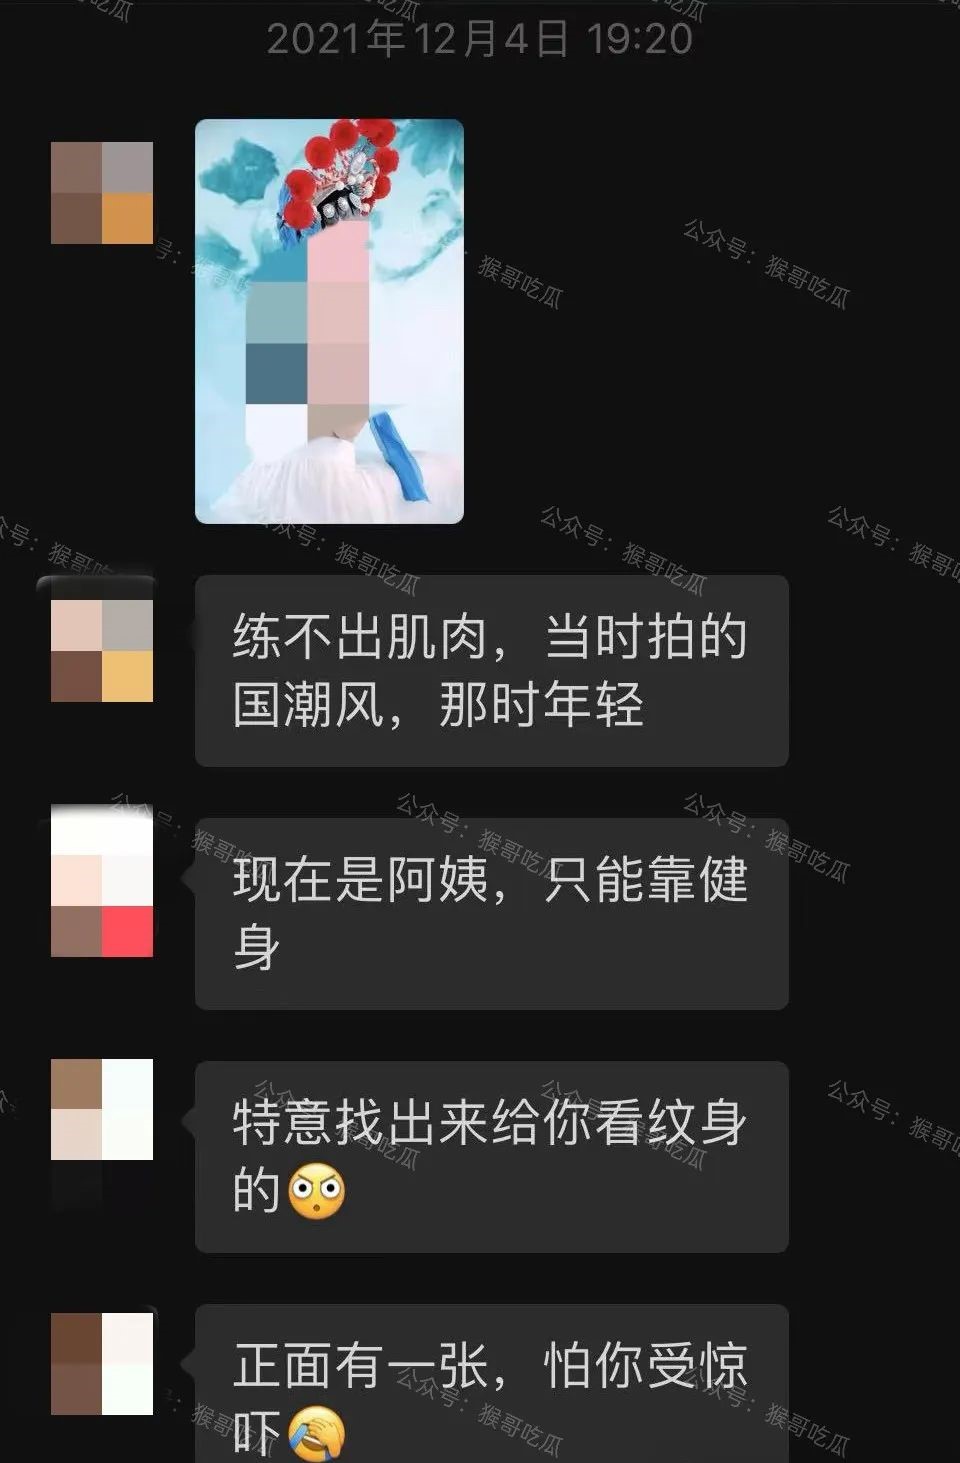 李绍萍与男方微信对话截图流出。